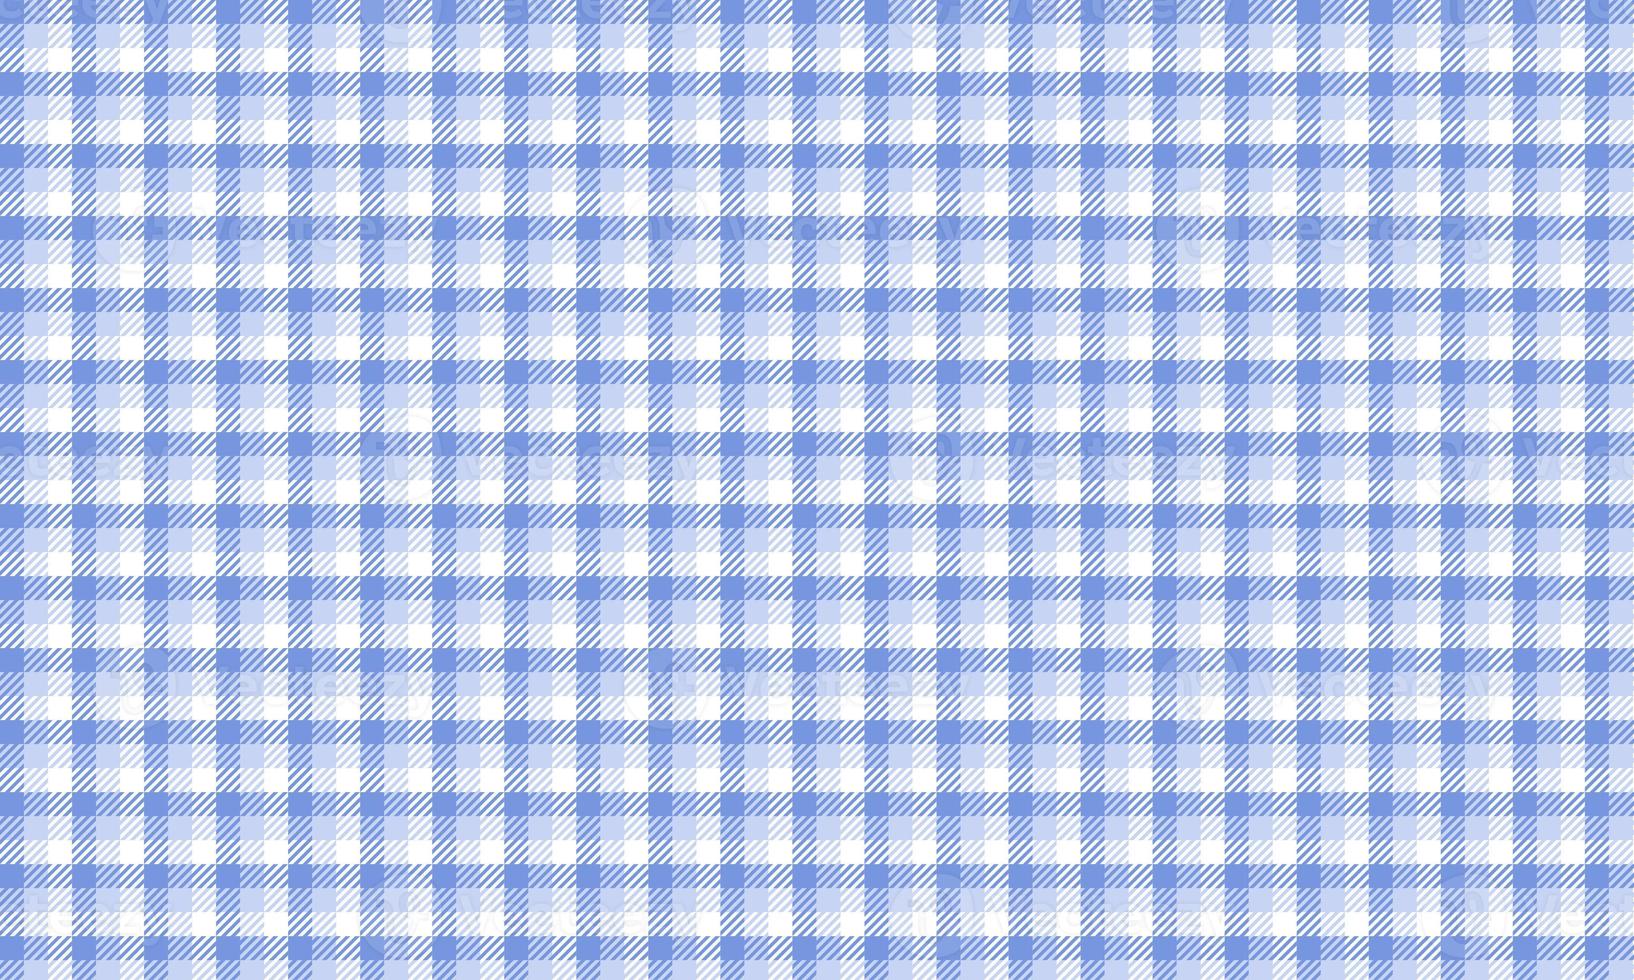 Blue seamless plaid pattern photo